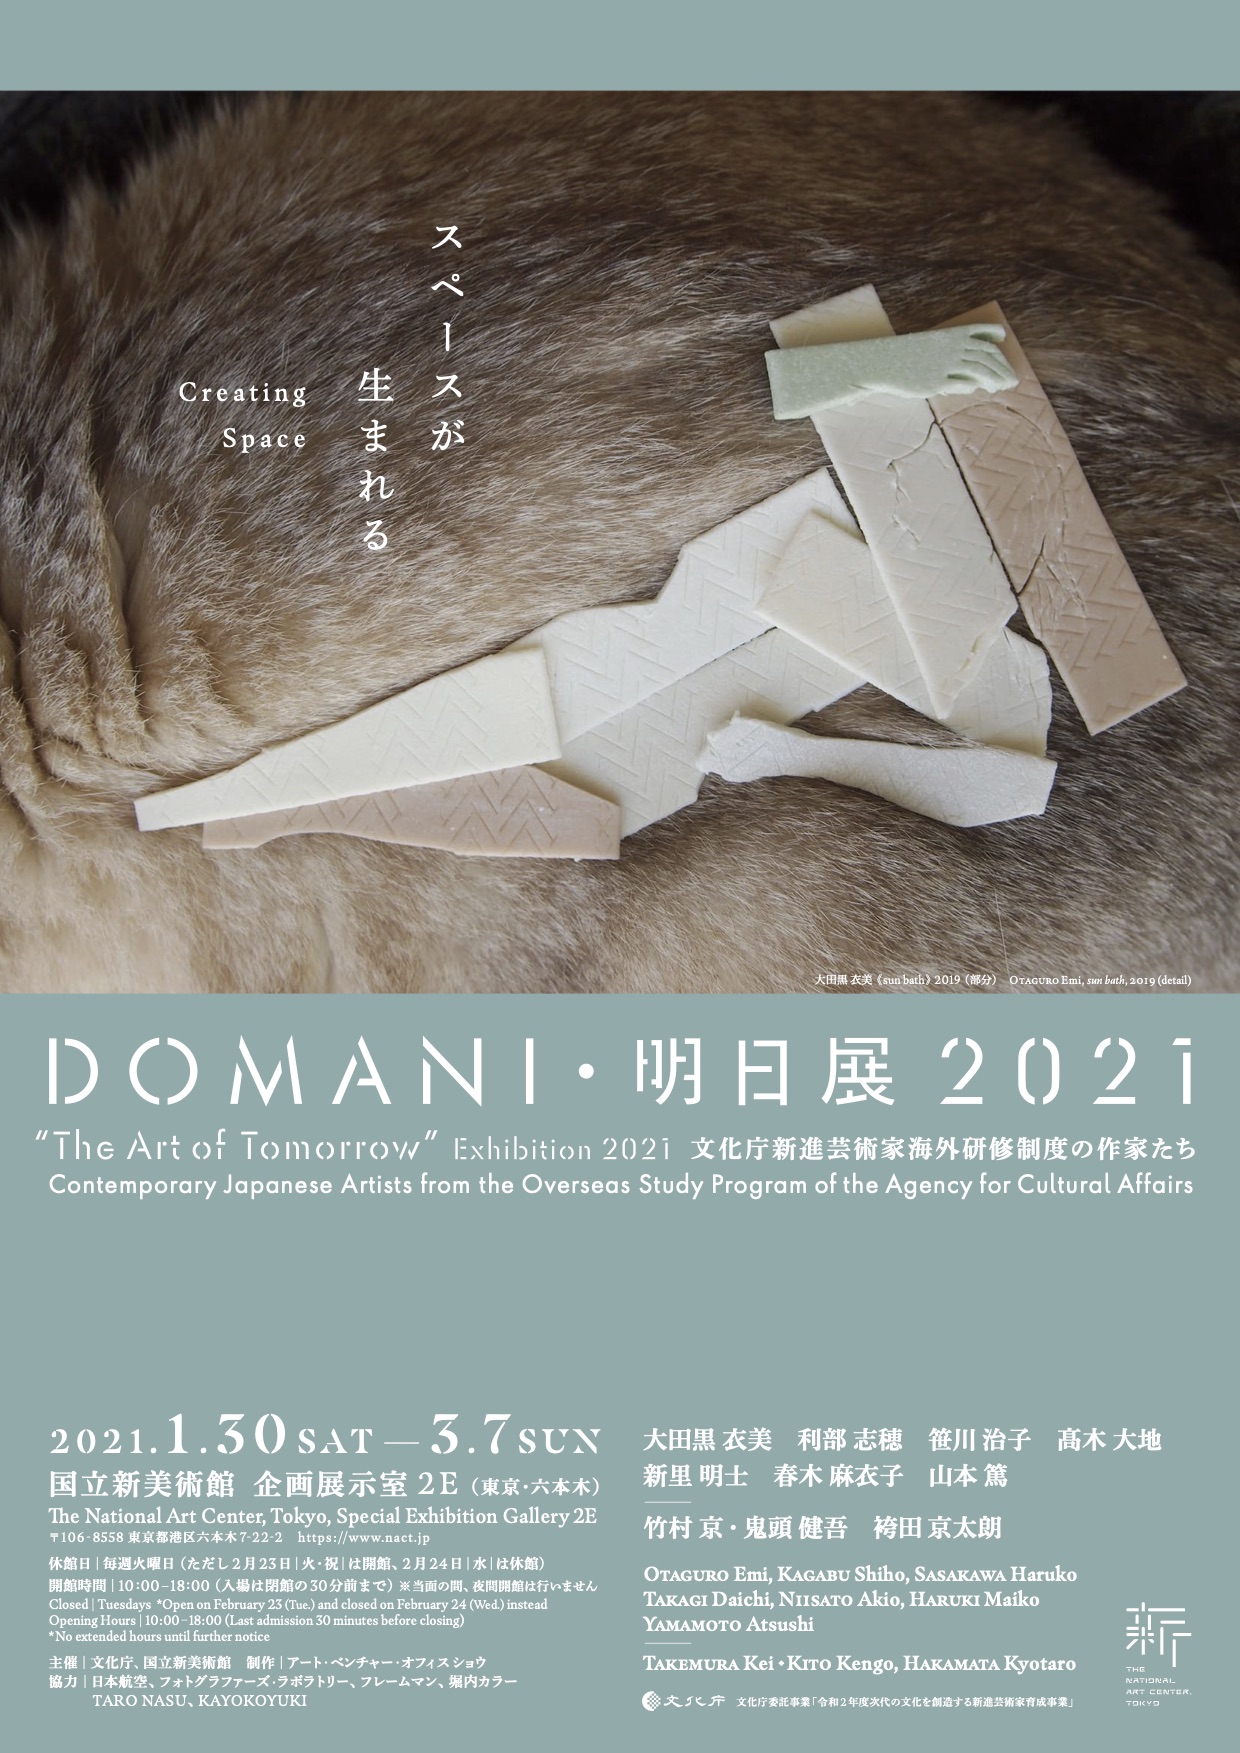 DOMANI・明日展 2021 Flyer